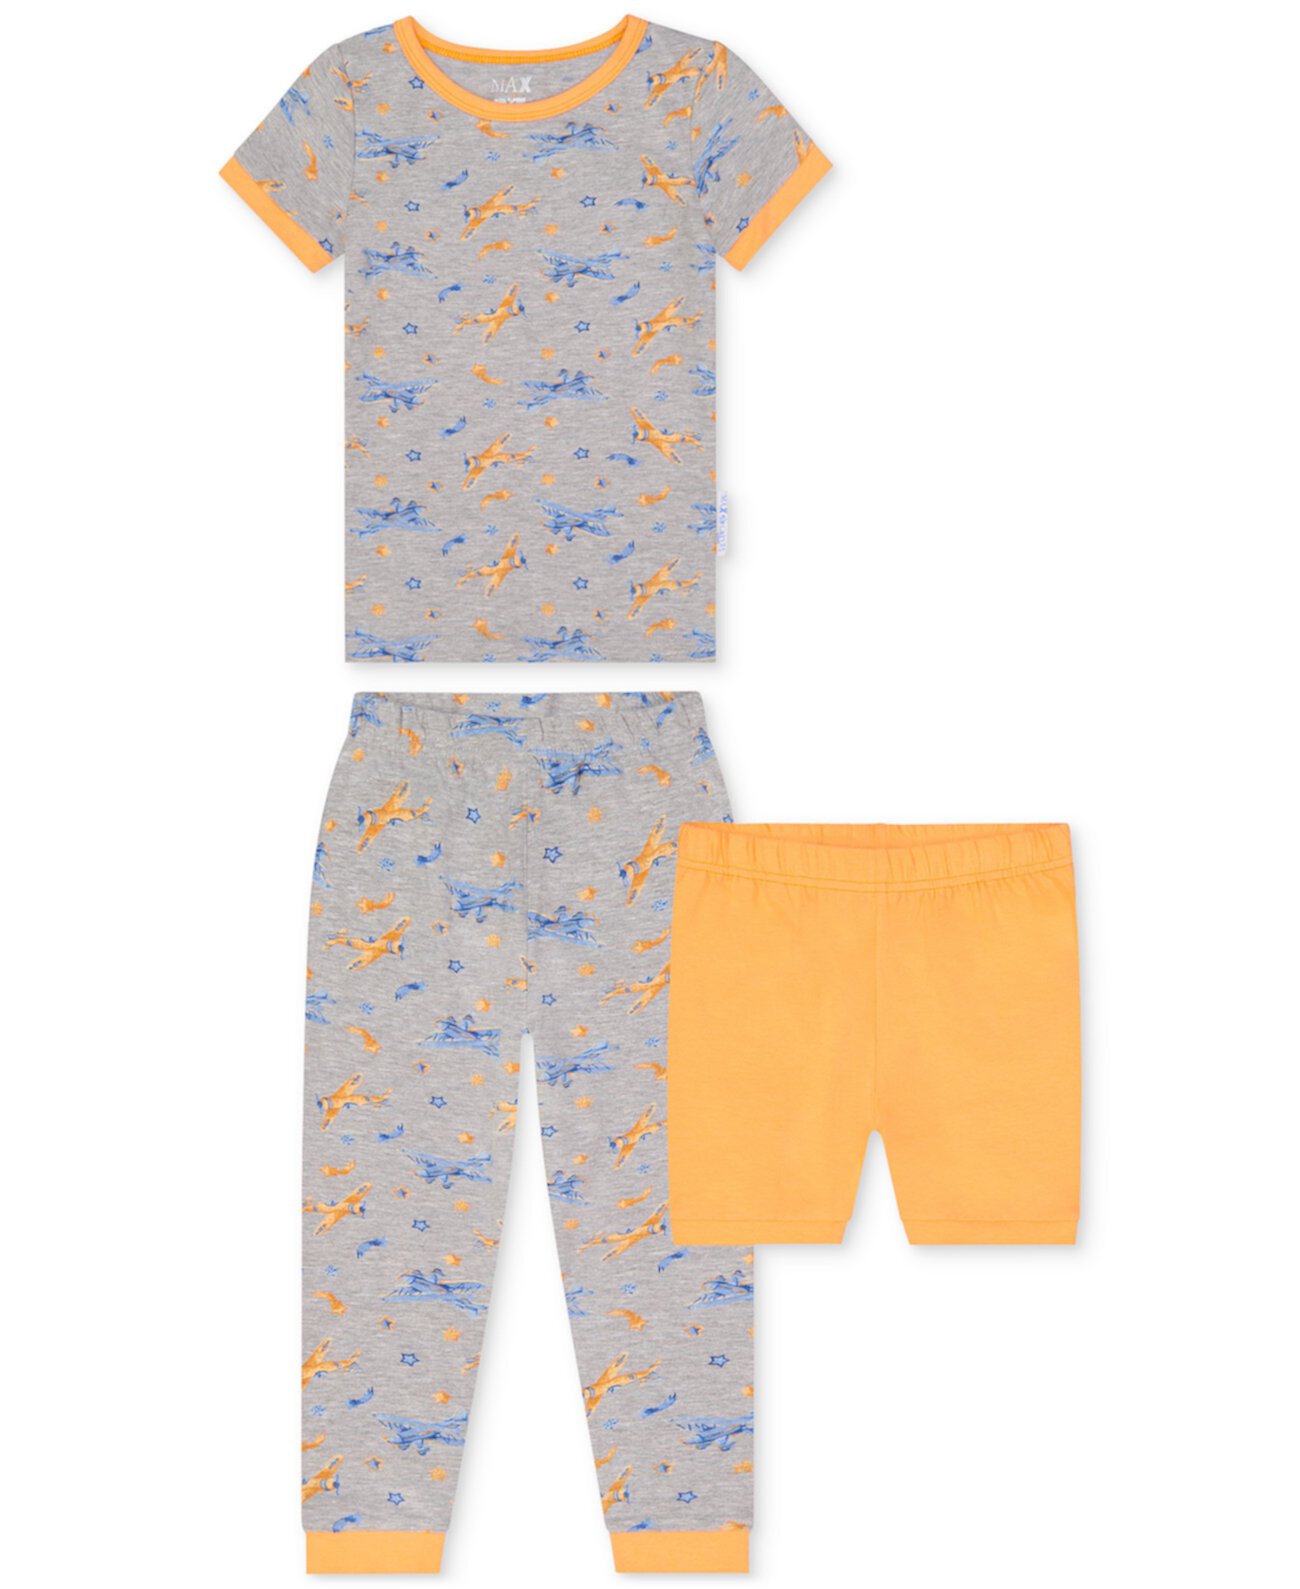 Двухкомпонентный пижамный комплект с принтом самолета и шортами для маленьких мальчиков Max & Olivia